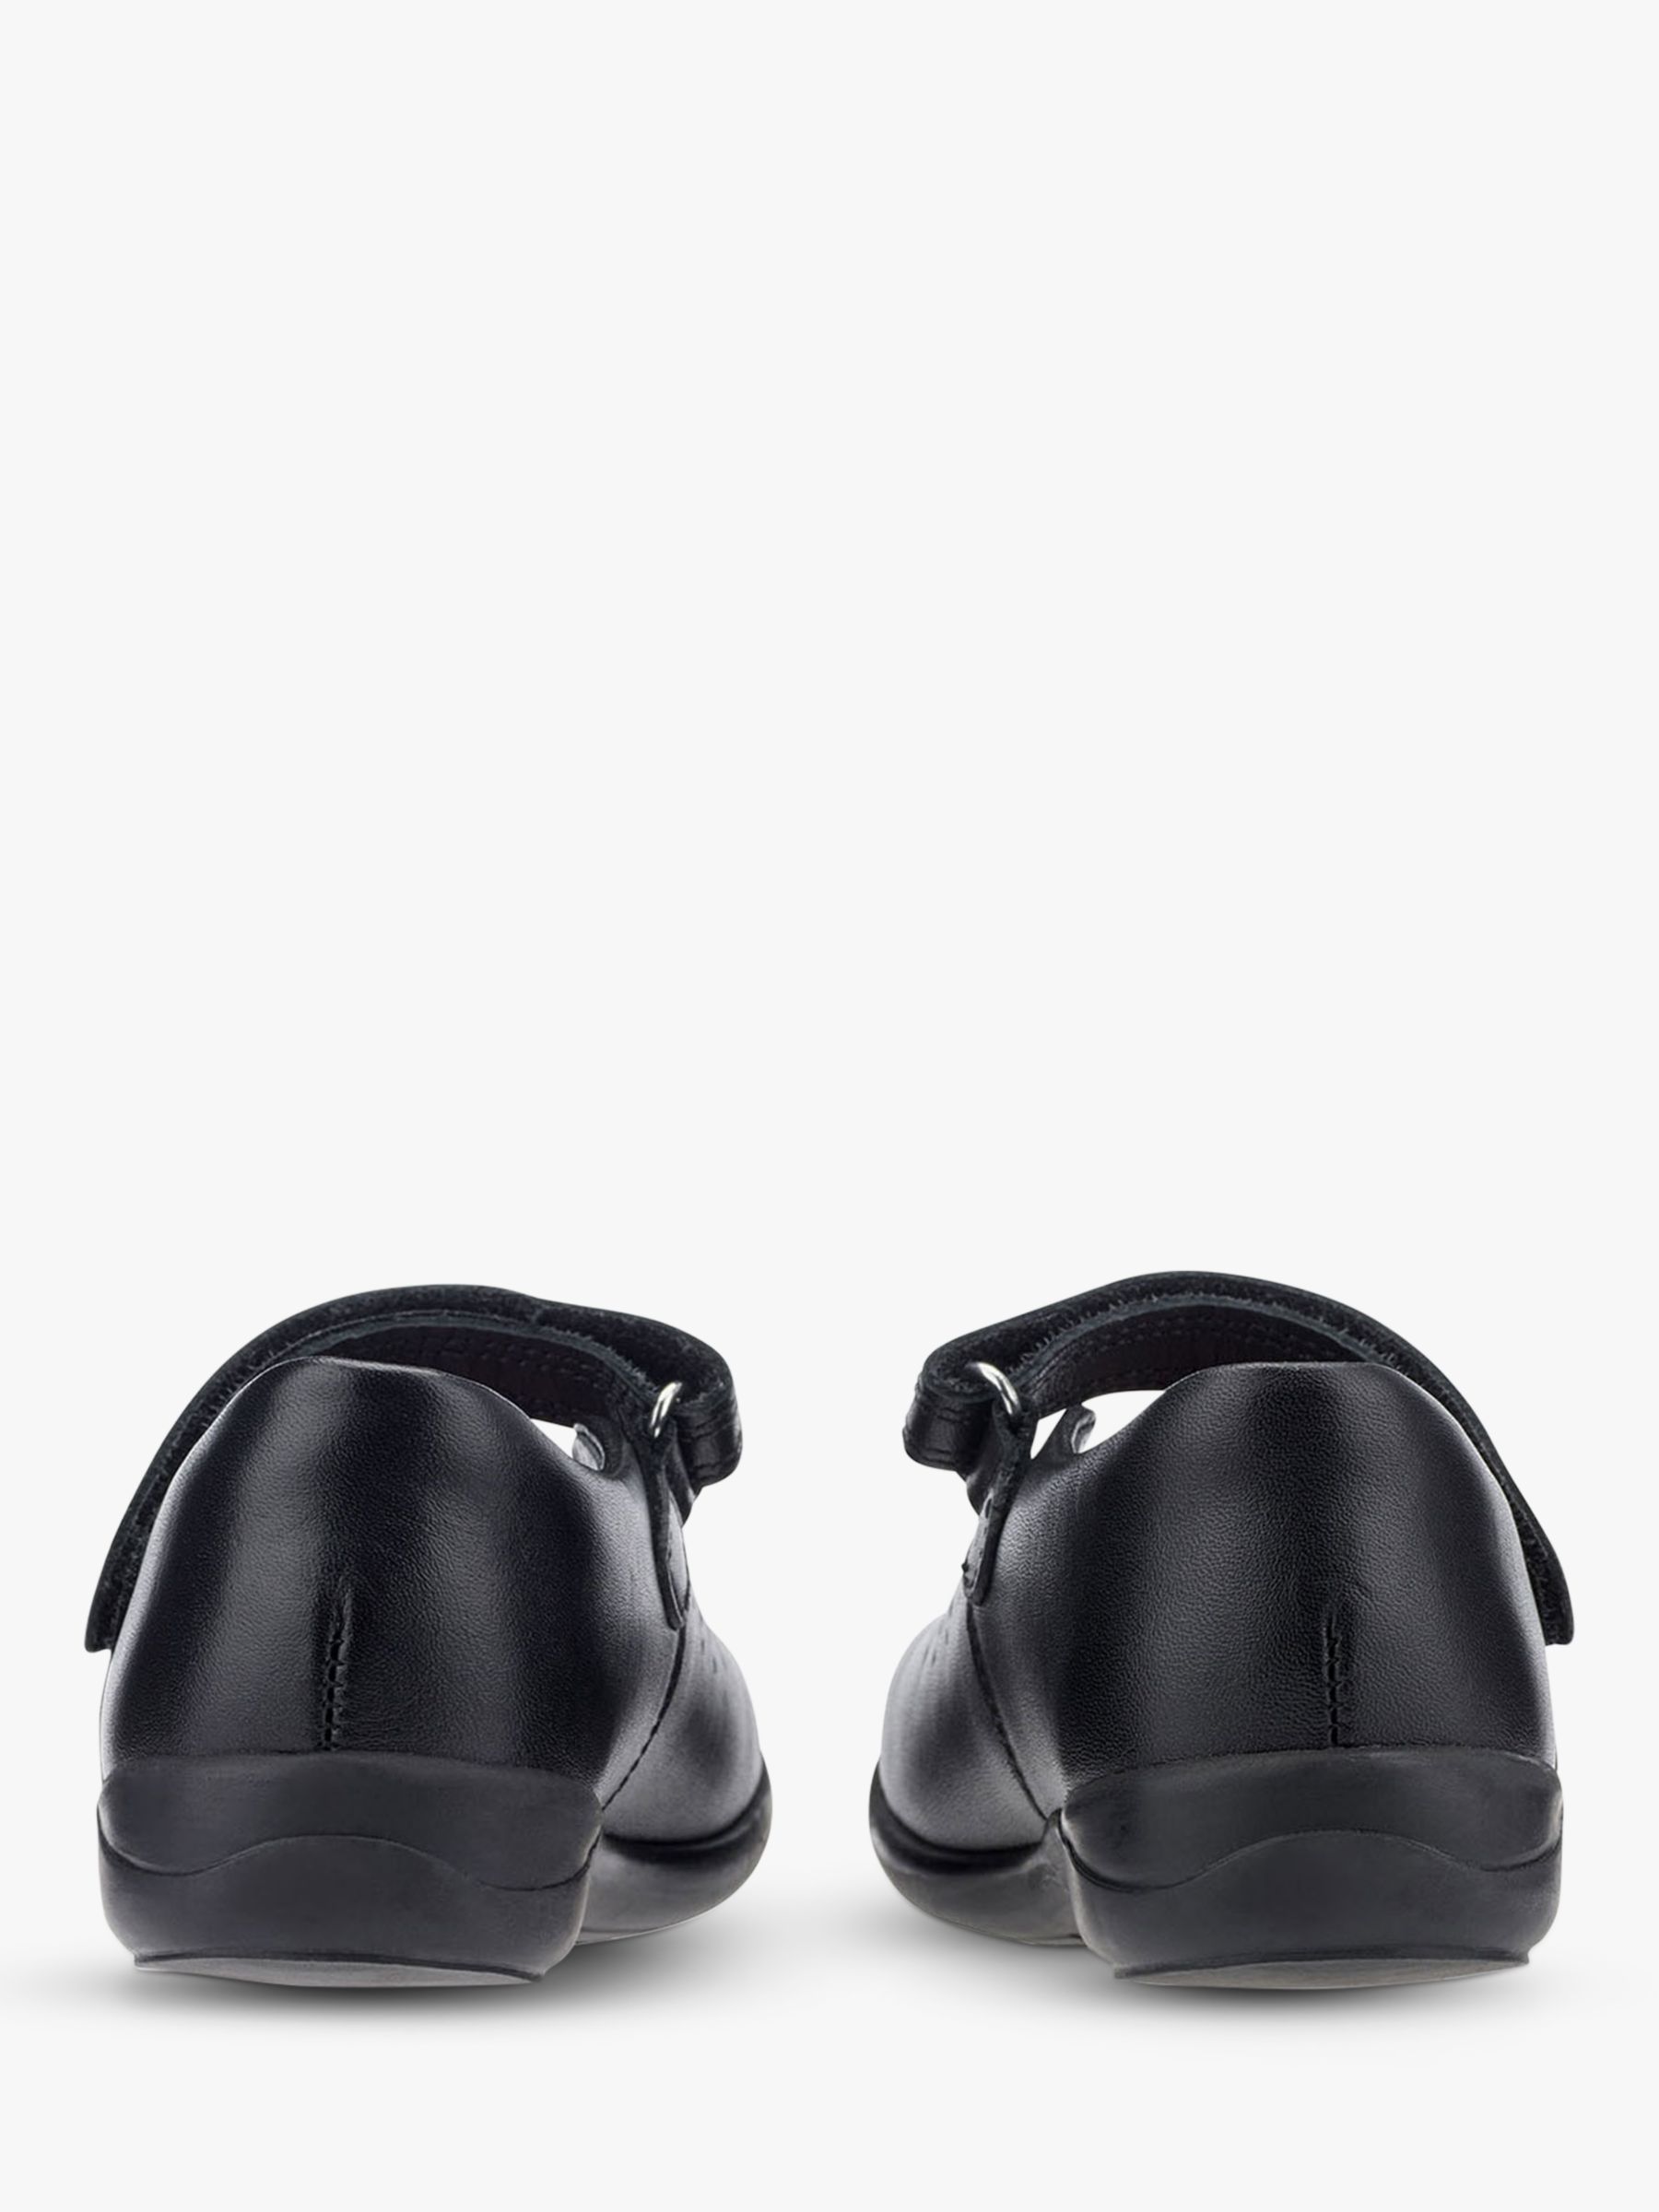 Start-Rite Kids' Mary Jane Leather Shoes, Black, Black, 10E Jnr